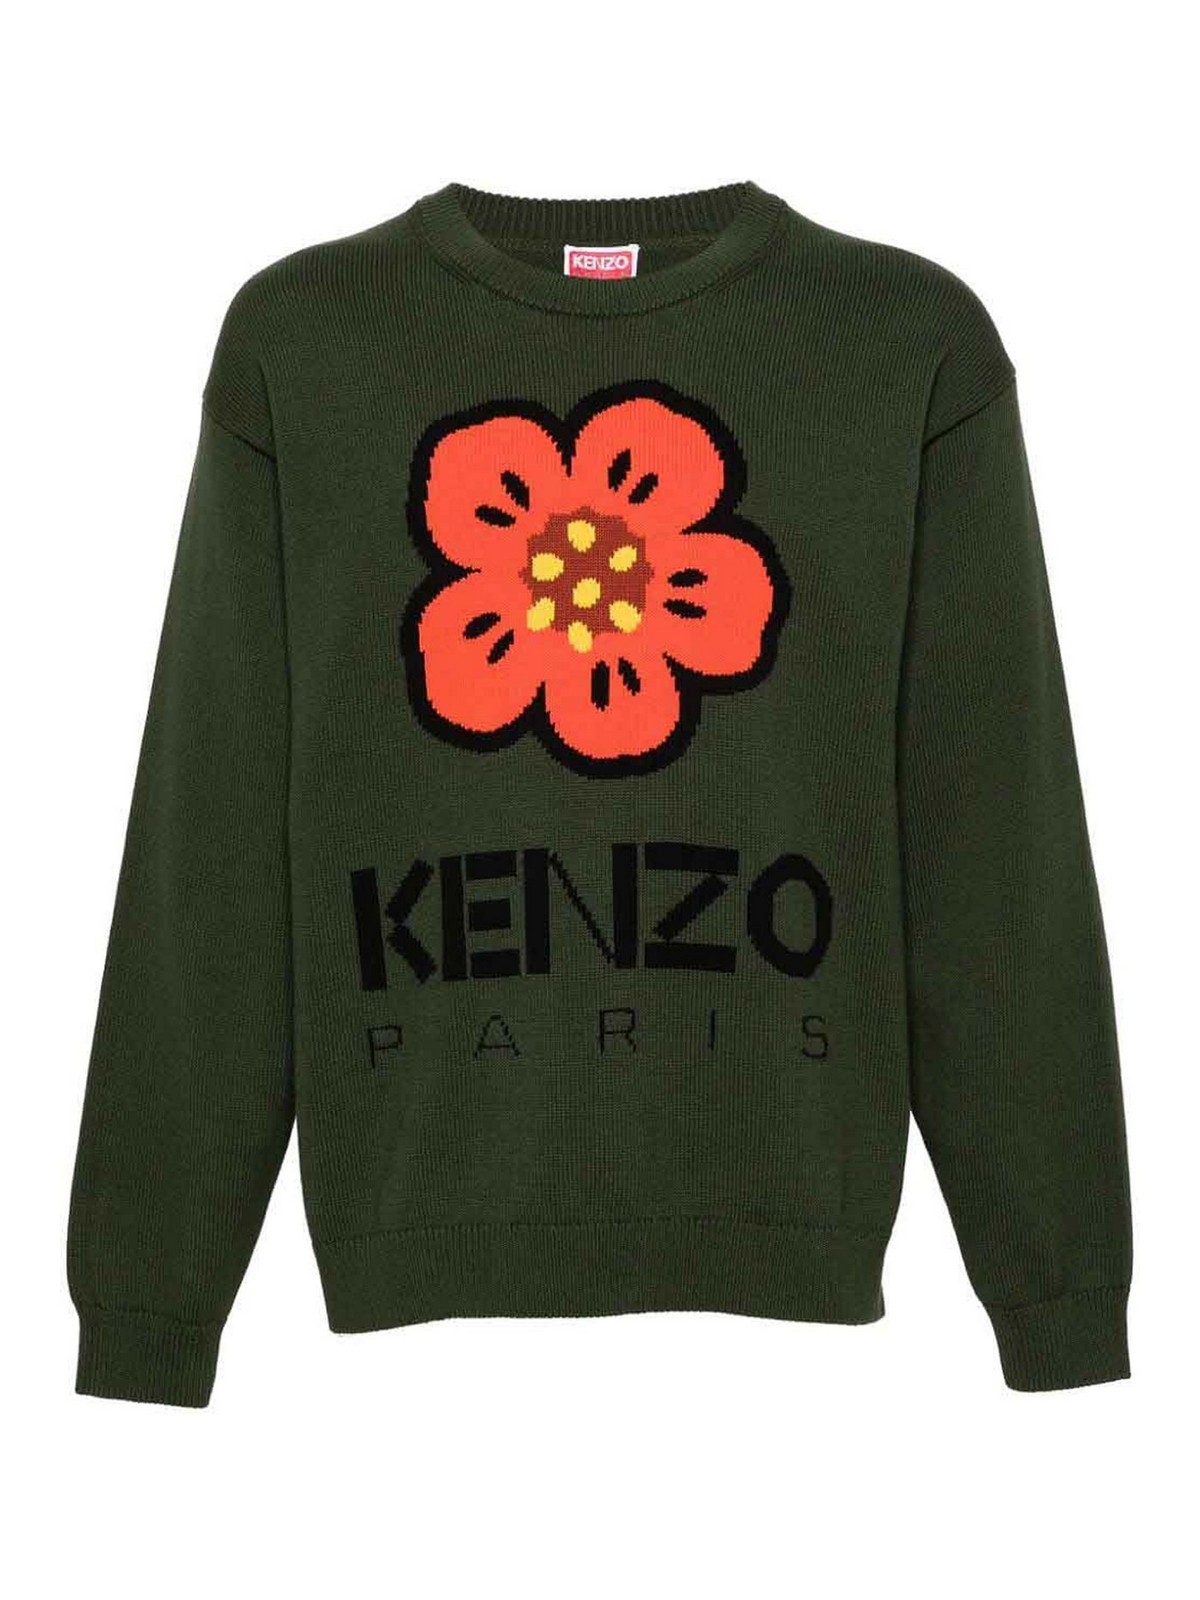 Kenzo Boke Flower Cotton Sweater In Light Brown